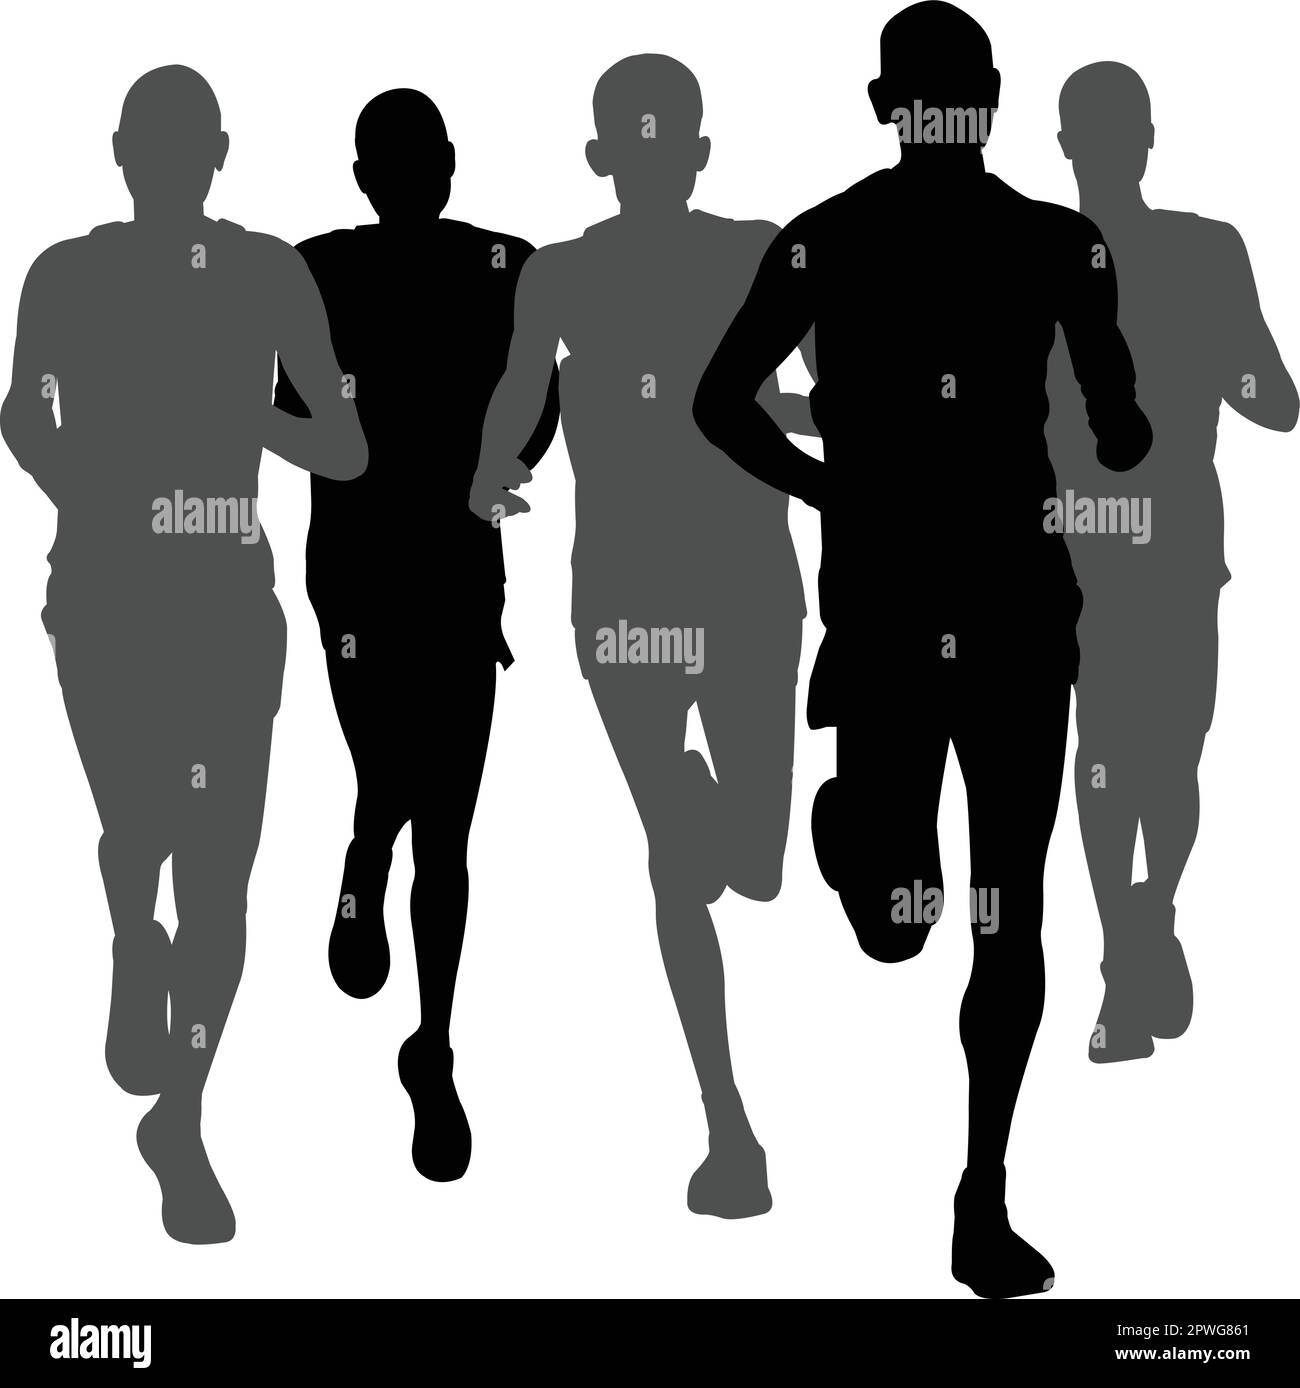 maratona running in gruppo - vettore di grafica Illustrazione Vettoriale